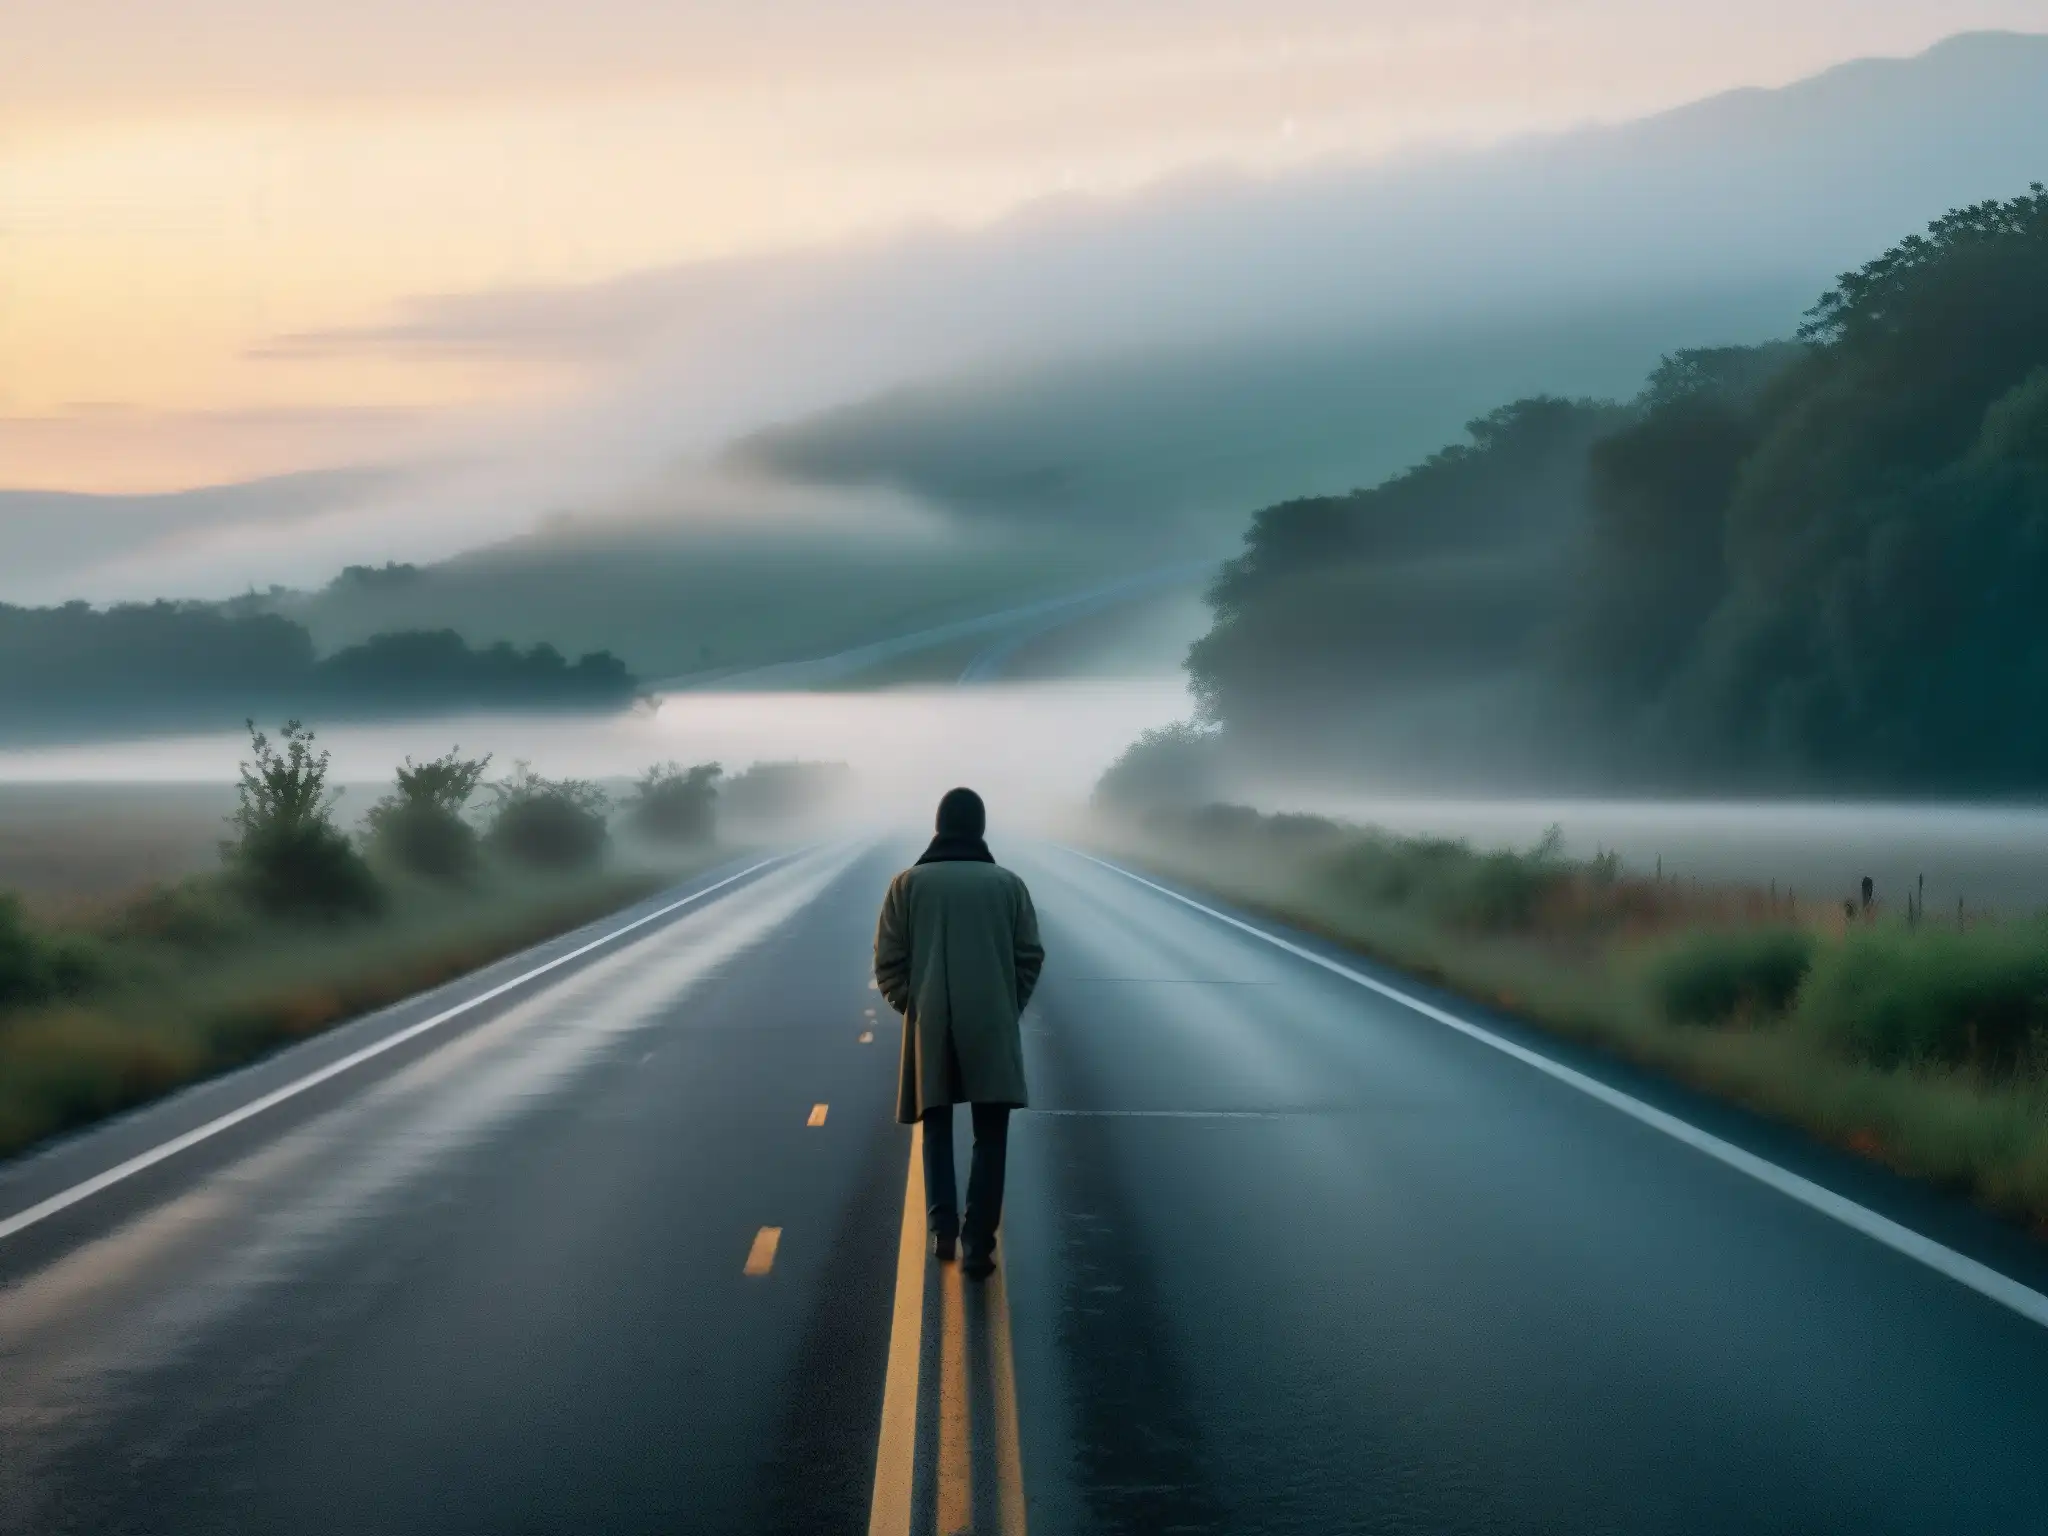 Un autostopista fantasma se yergue en un desolado tramo de carretera al anochecer, rodeado de misterio y soledad